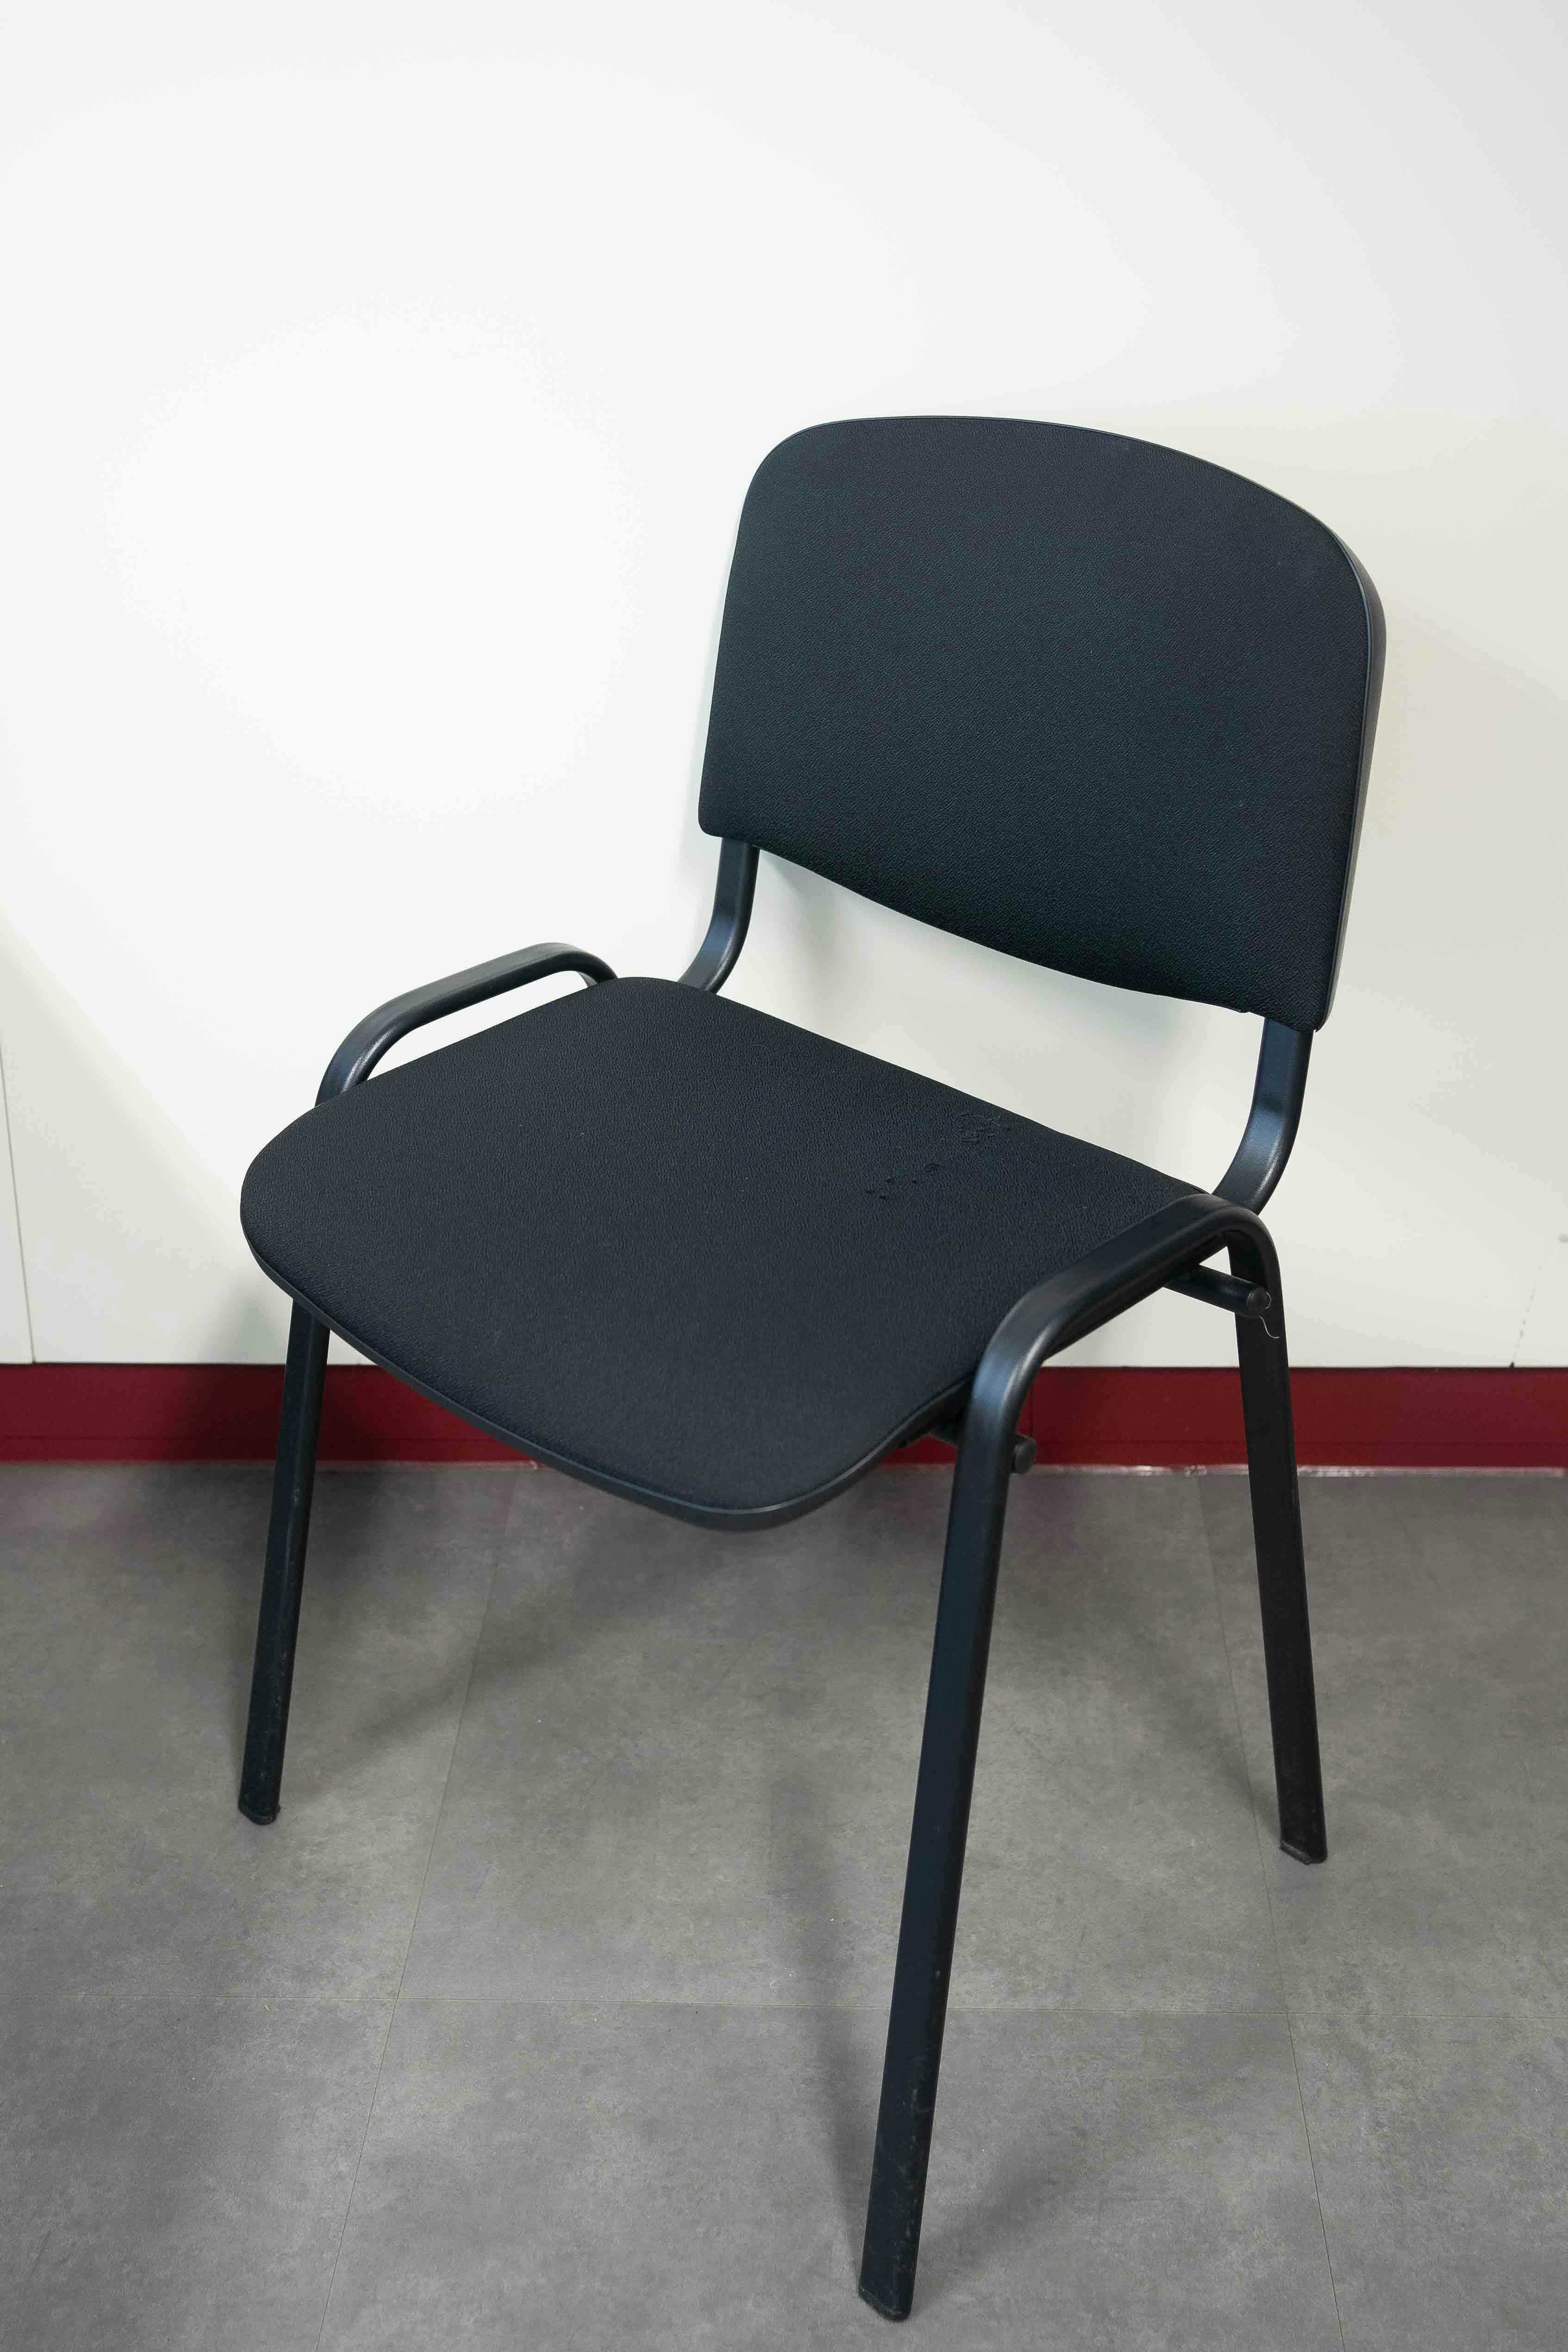 Chaise empilable noire avec pieds noirs - Relieve Furniture